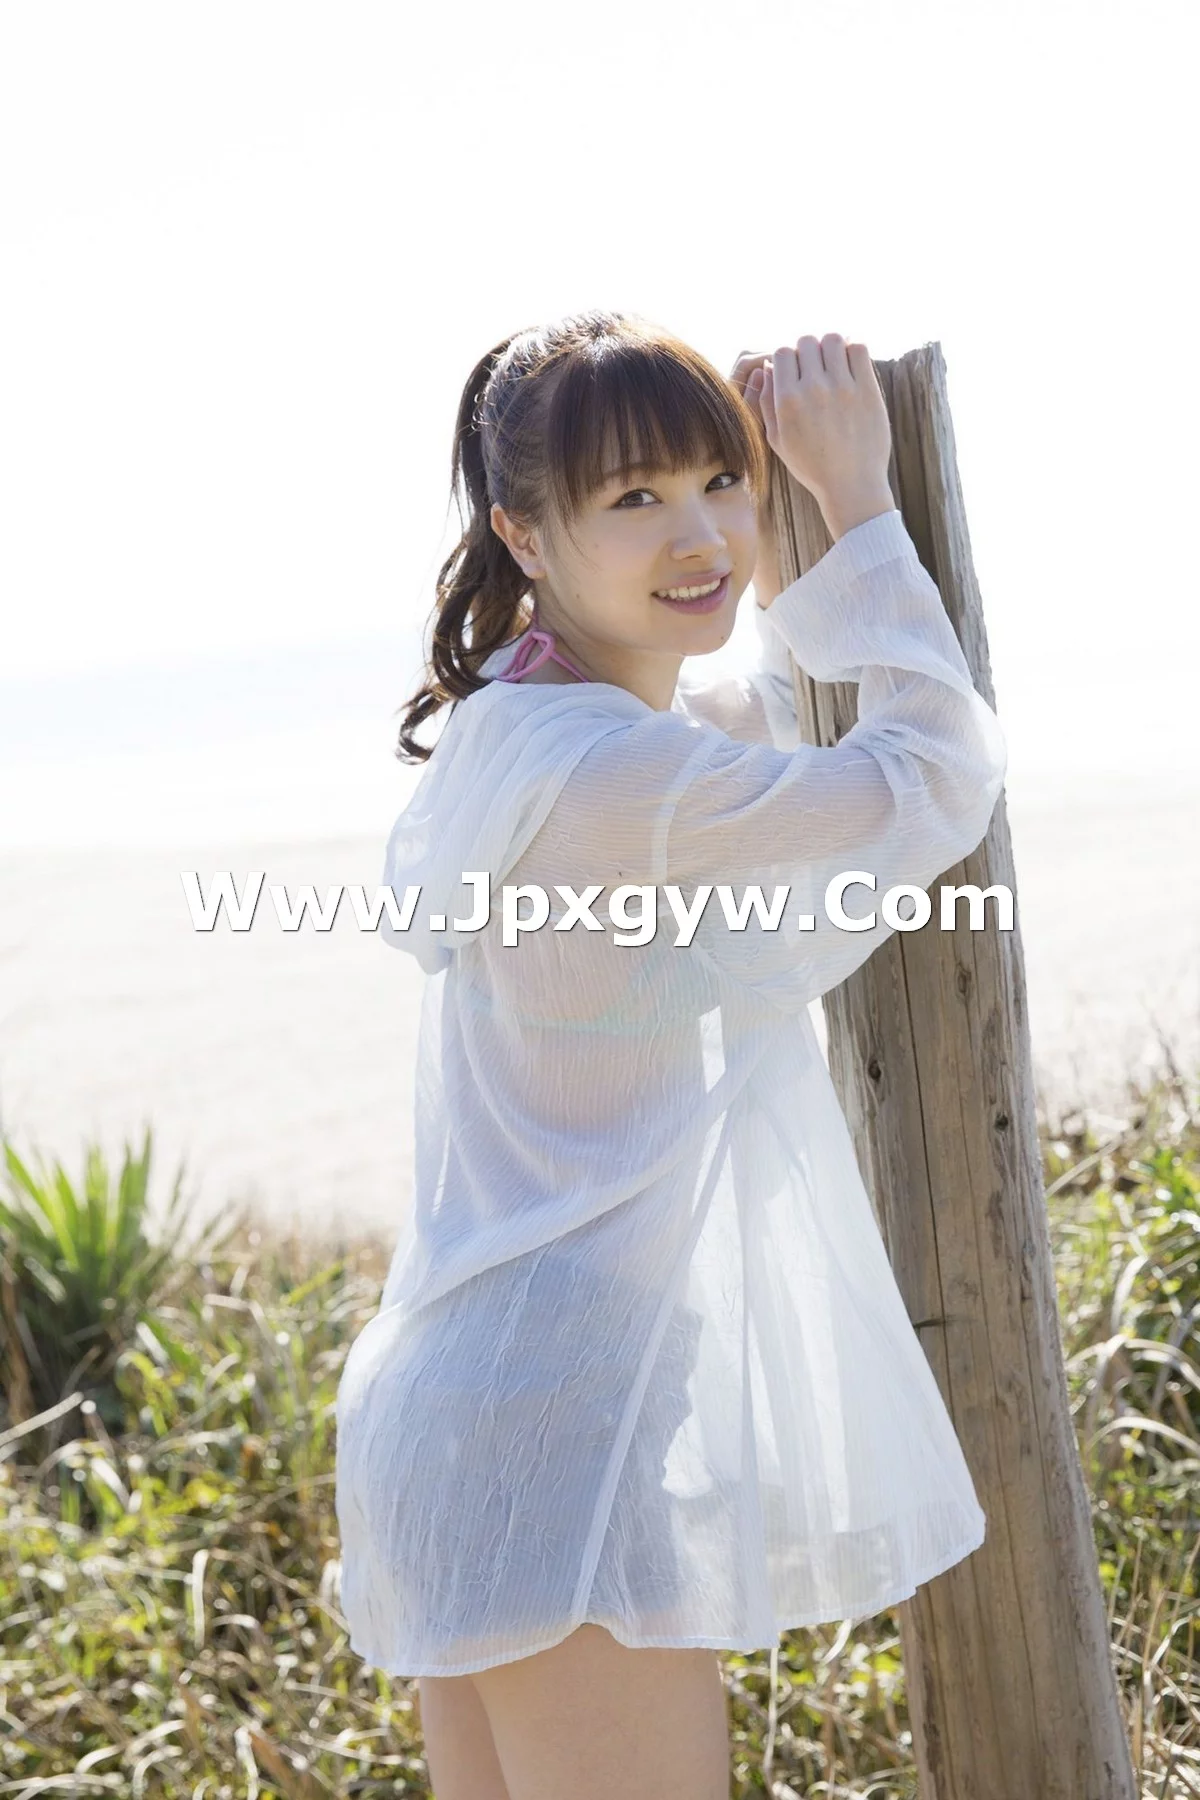 Xgyw.Org_日本美少女石田亚佑美户外性感白衬衣+海边比基尼系列秀完美身材迷人写真104P